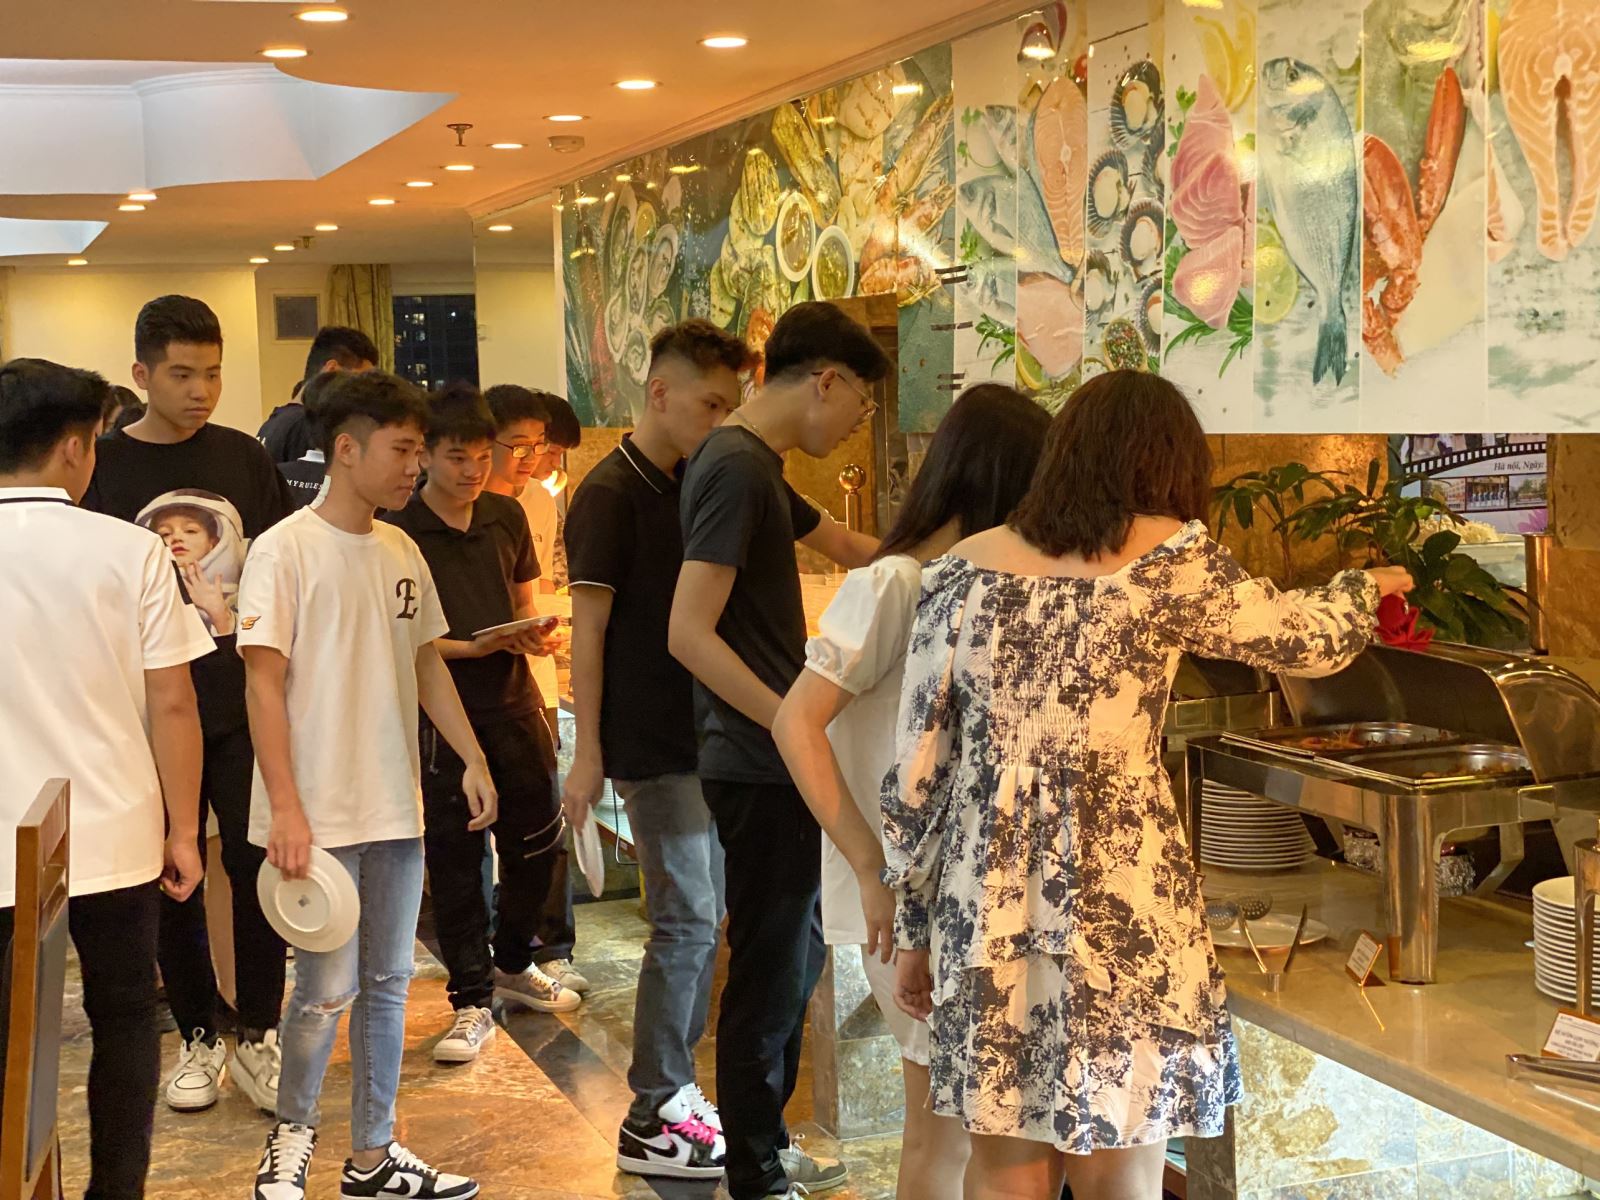 Ăn uống no nê, đón hè rực rỡ - A25 tổ chức Buffet học sinh đón đoàn lớp 12 trường THPT Đoàn Kết, Hà Nội